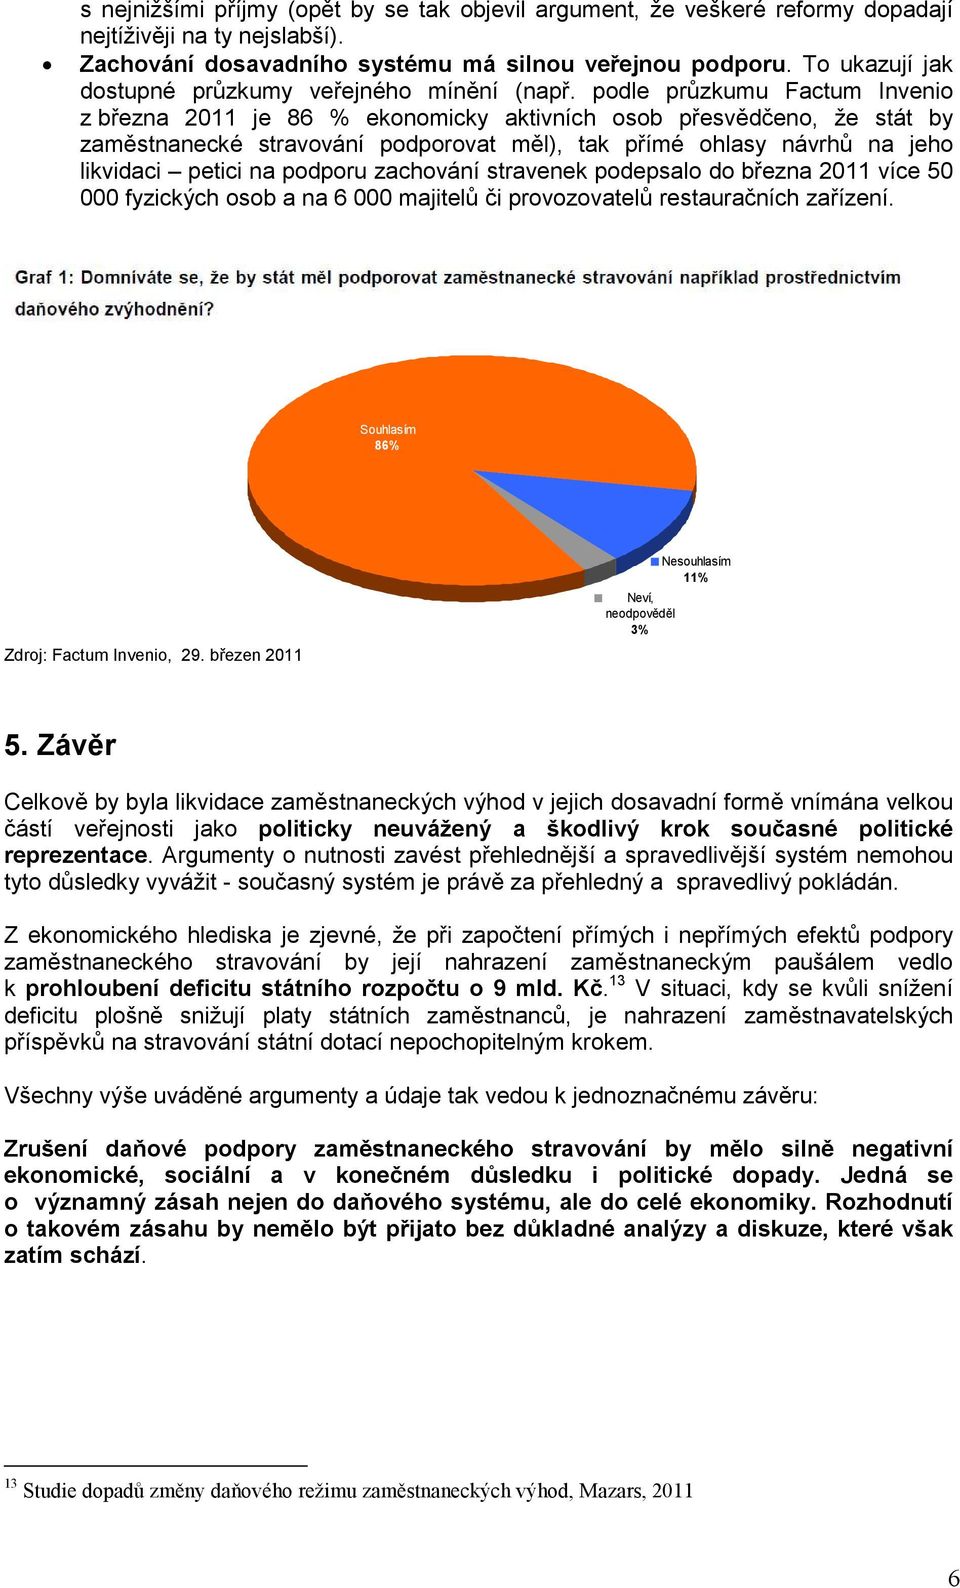 podle průzkumu Factum Invenio z března 2011 je 86 % ekonomicky aktivních osob přesvědčeno, že stát by zaměstnanecké stravování podporovat měl), tak přímé ohlasy návrhů na jeho likvidaci petici na